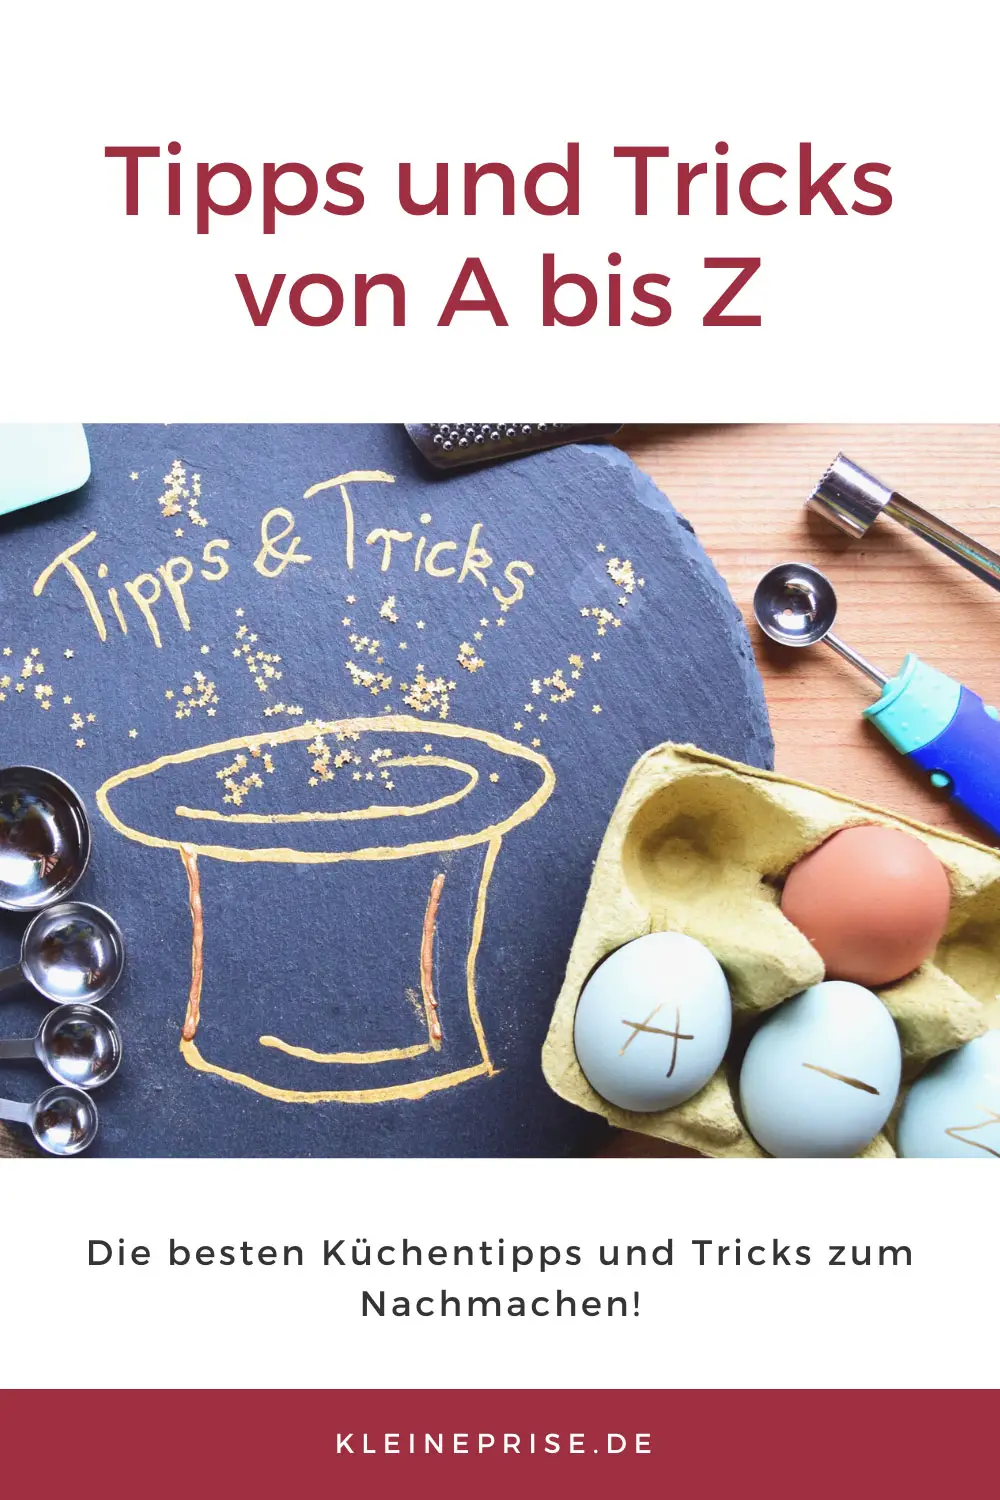 Pin es bei Pinterest: Tipps und Tricks von A bis Z